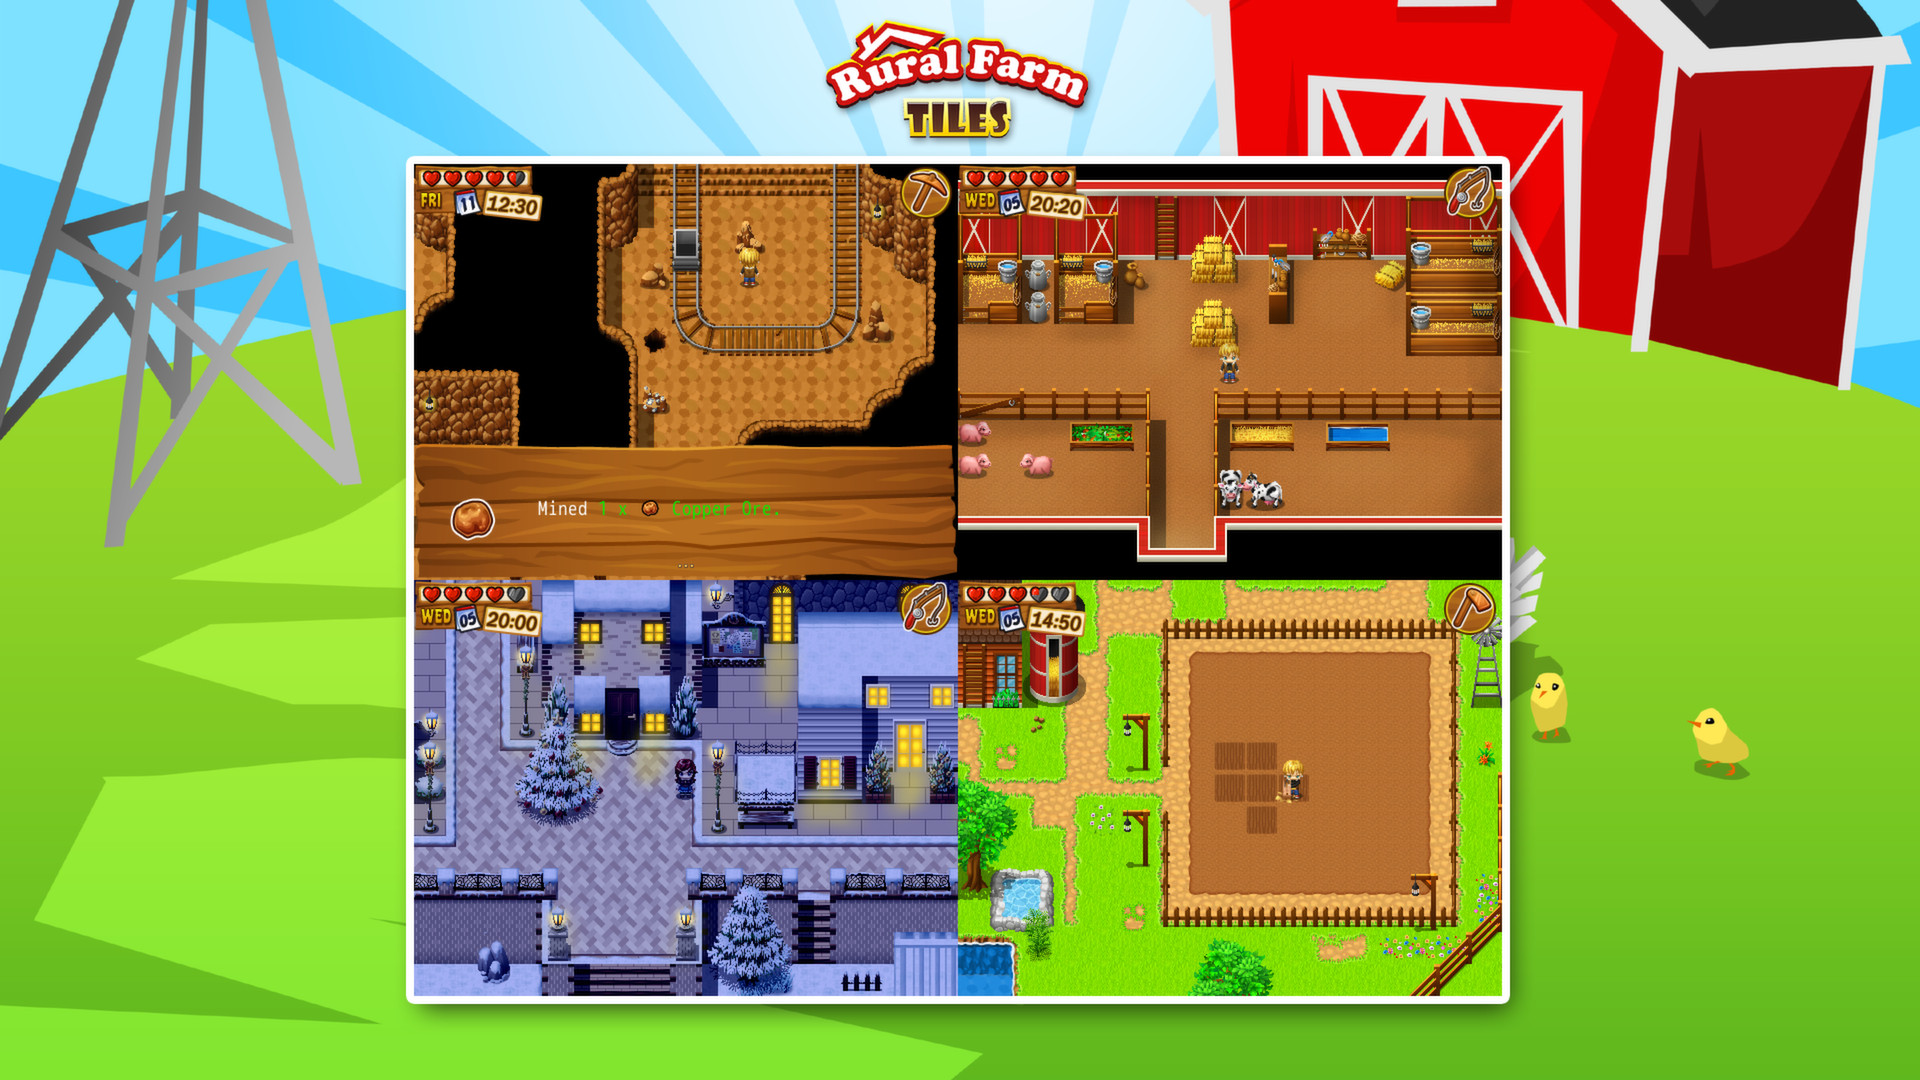 RPG Maker VX Ace - Rural Farm Tiles Resource Pack screenshot